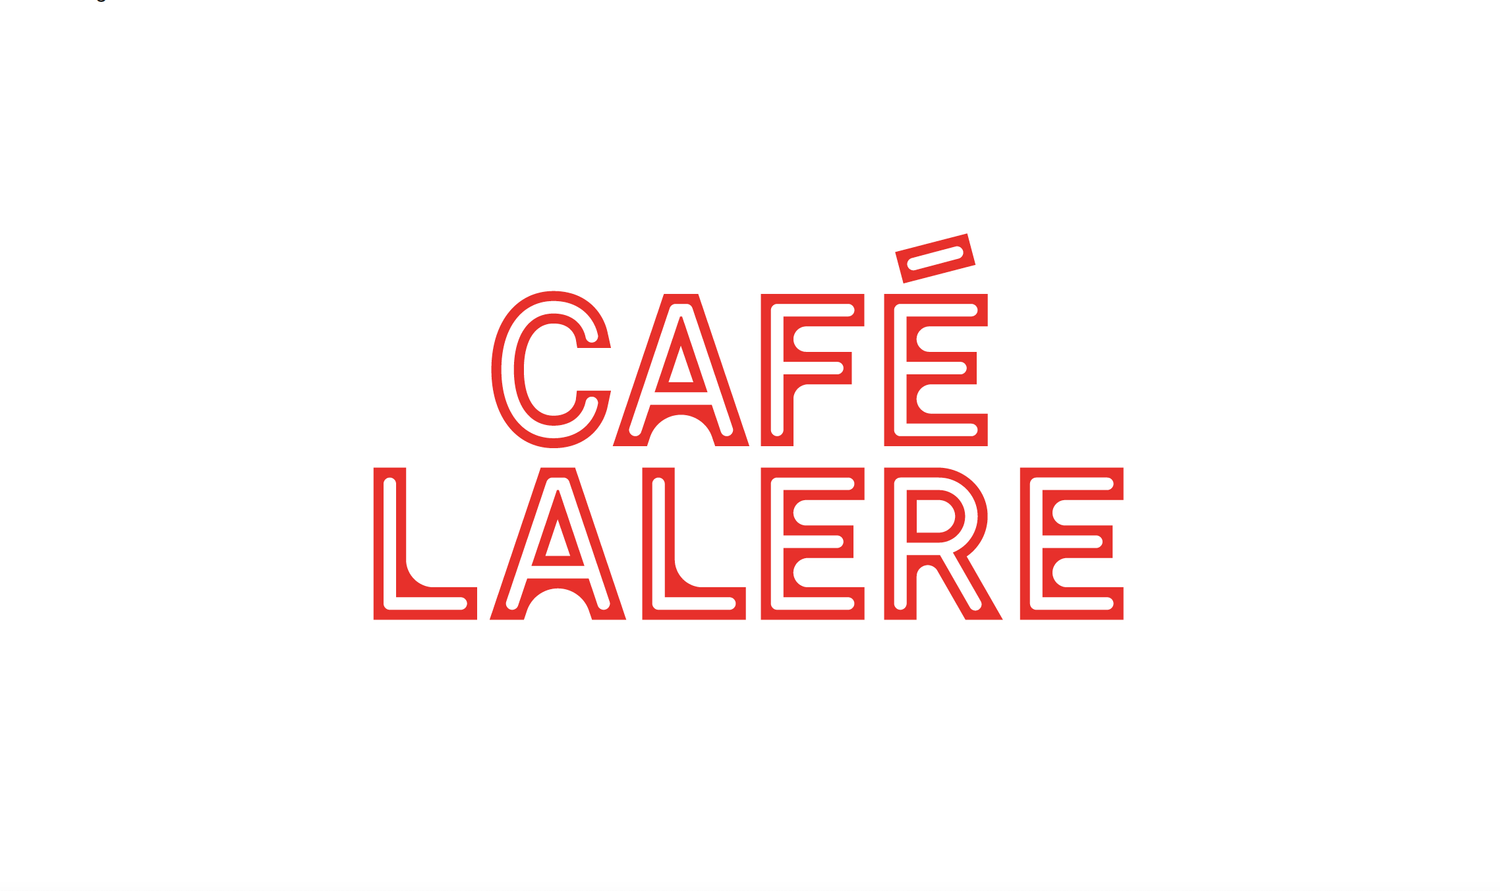 Café LALERE